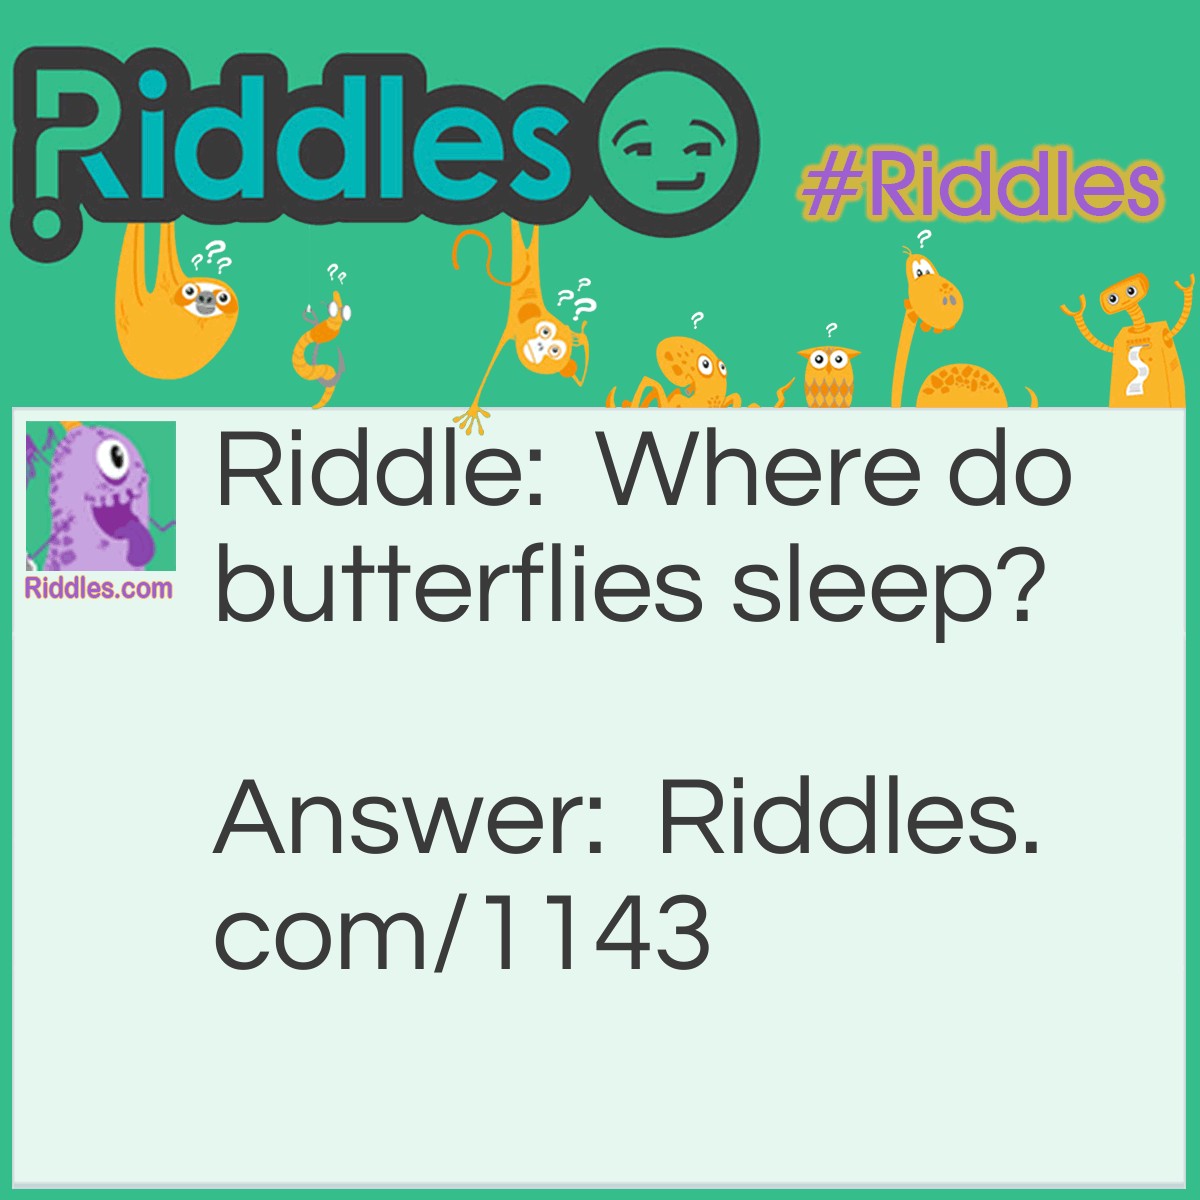 Riddle: Where do butterflies sleep? Answer: On Caterpillows!